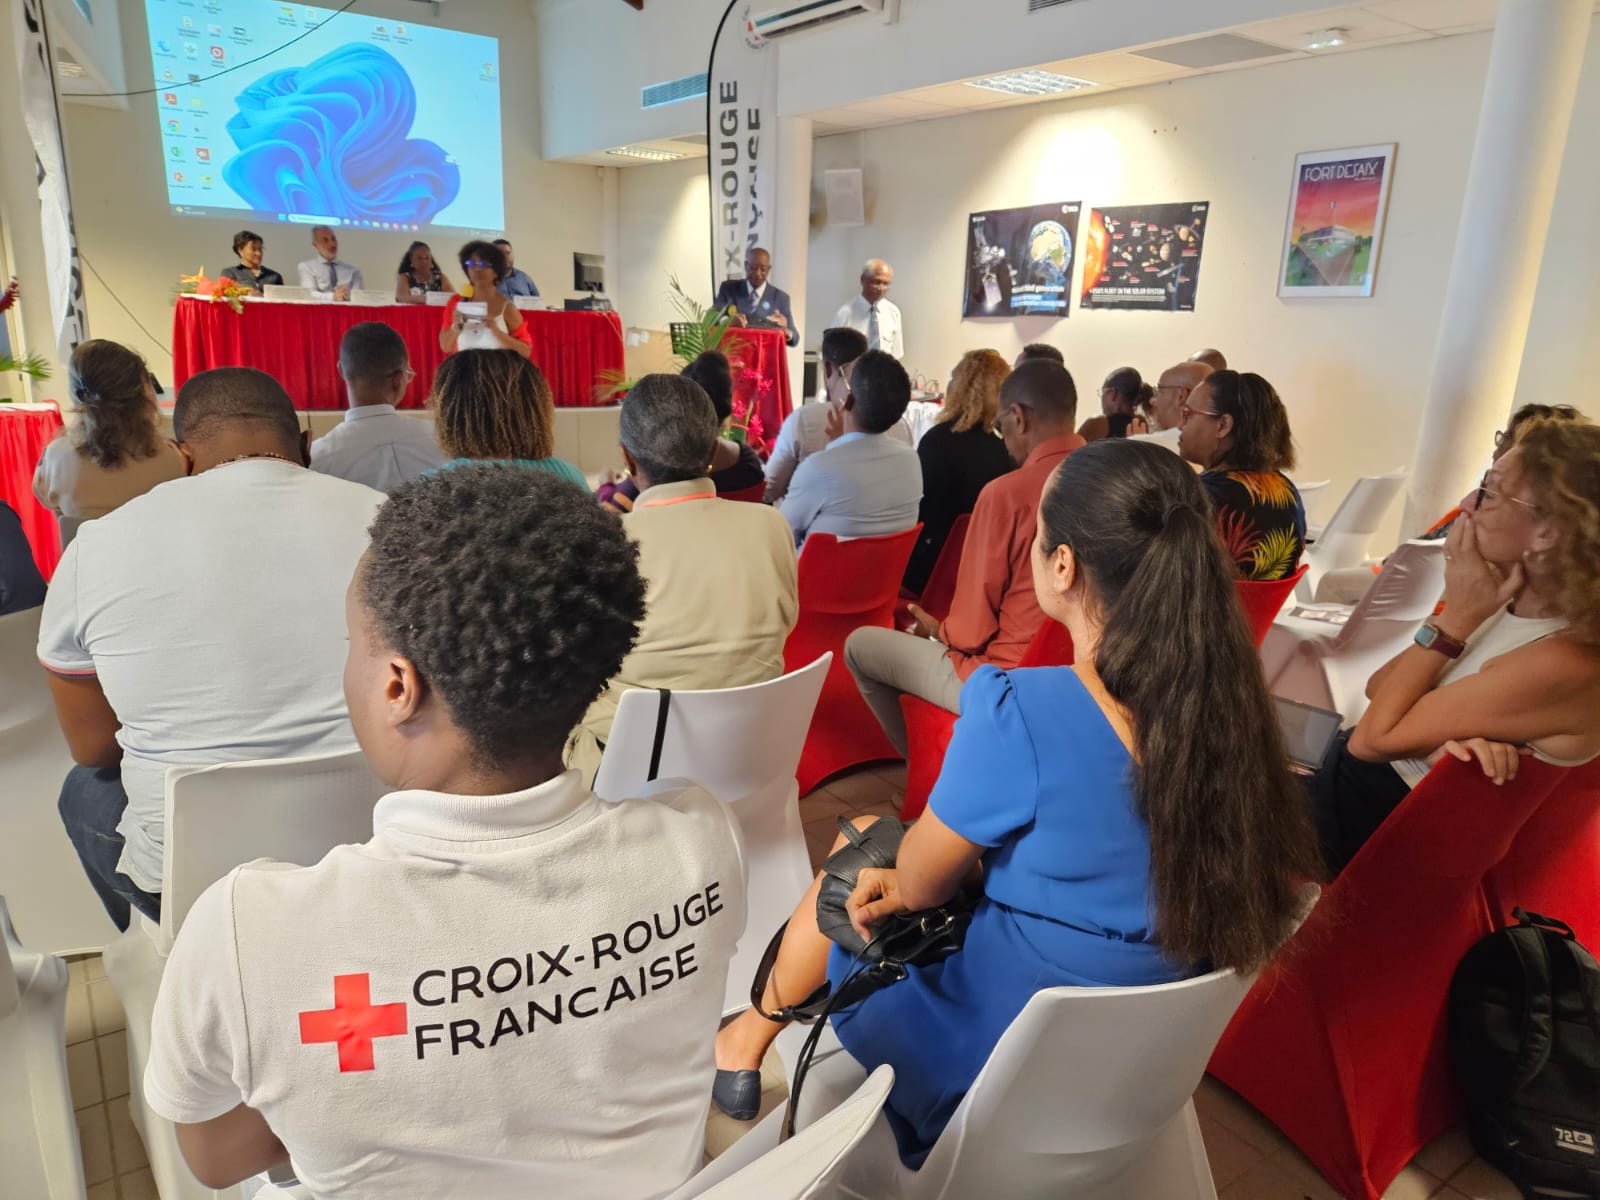     L'Option Croix-Rouge : un engouement croissant pour l'engagement citoyen

